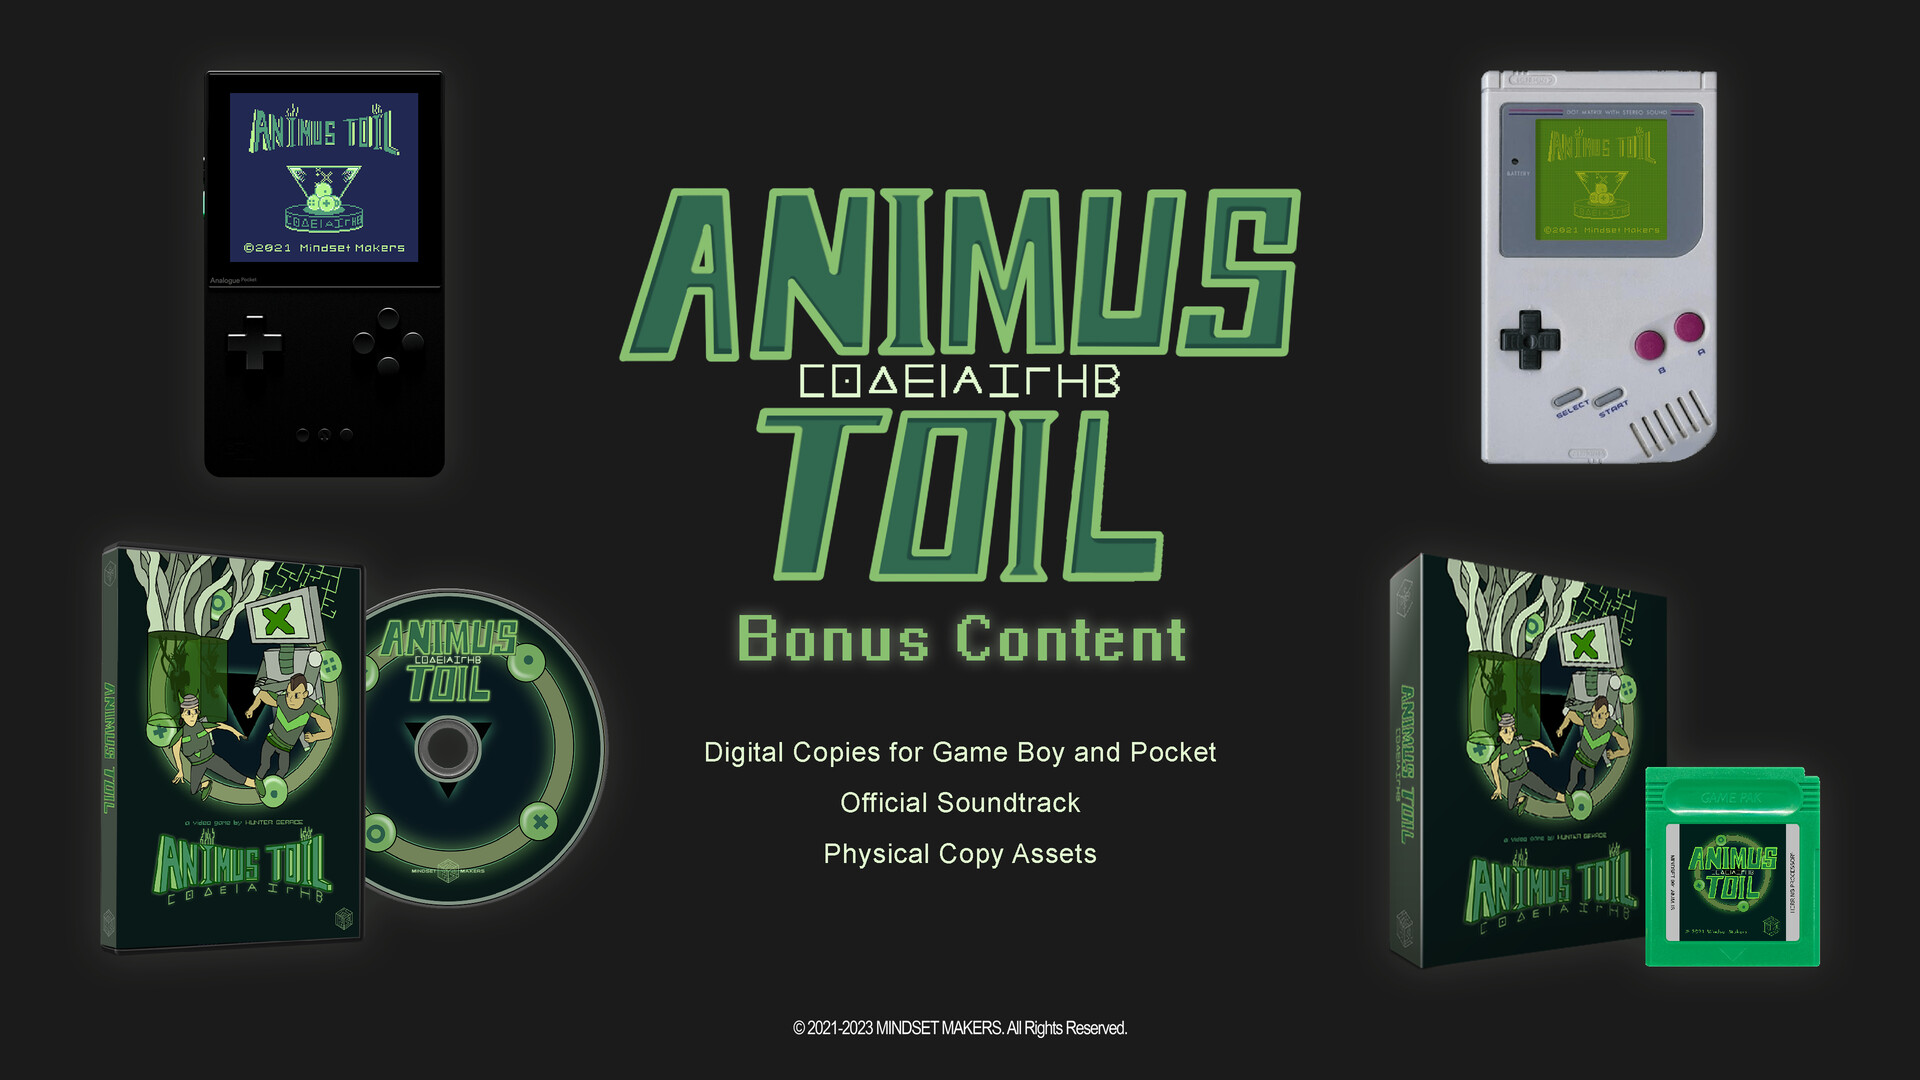 Animus Toil - Bonus Content ($2 Donation) Featured Screenshot #1